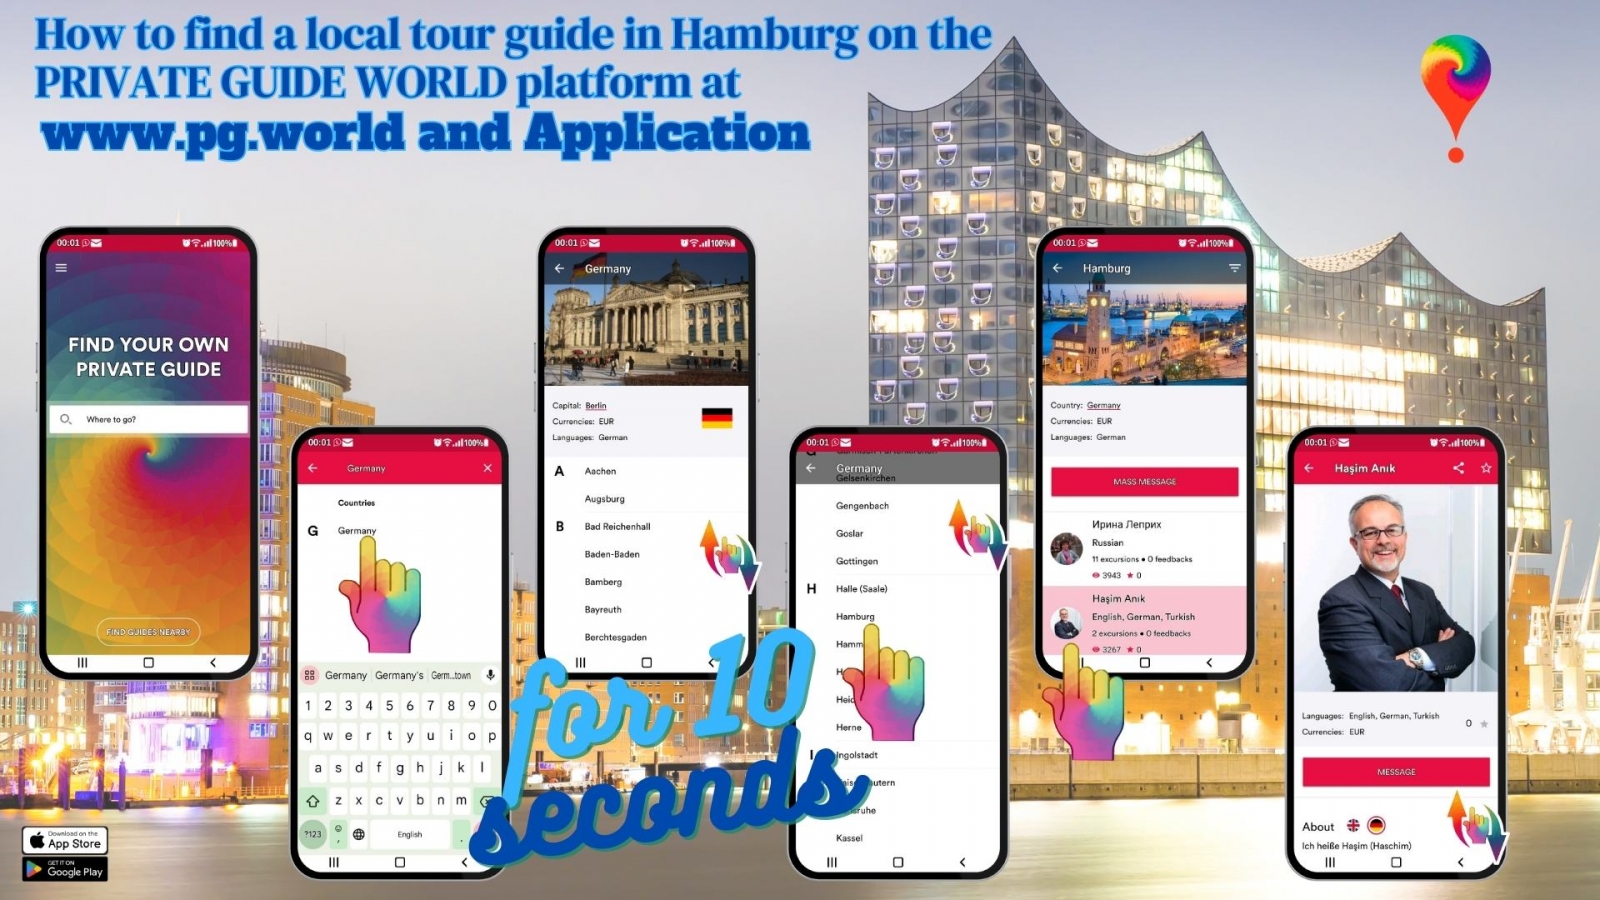 Cómo encontrar un guía turístico local en Hamburgo en la plataforma PRIVATE GUIDE WORLD